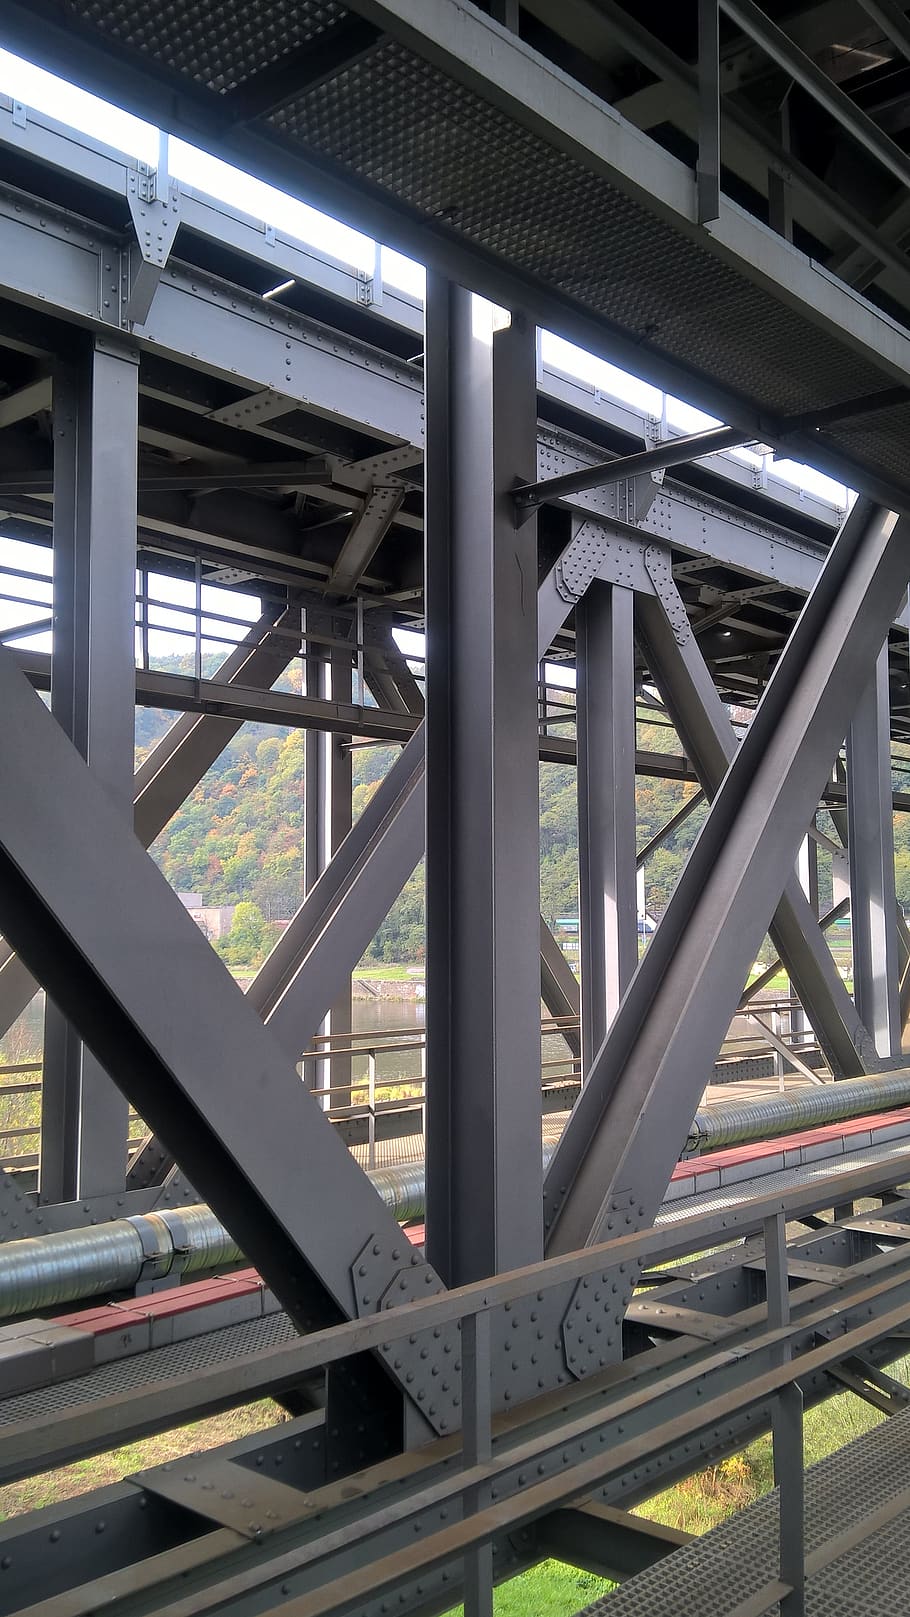 railway, bridge, structure, metal, steel, metal construction, architecture, built structure, connection, transportation